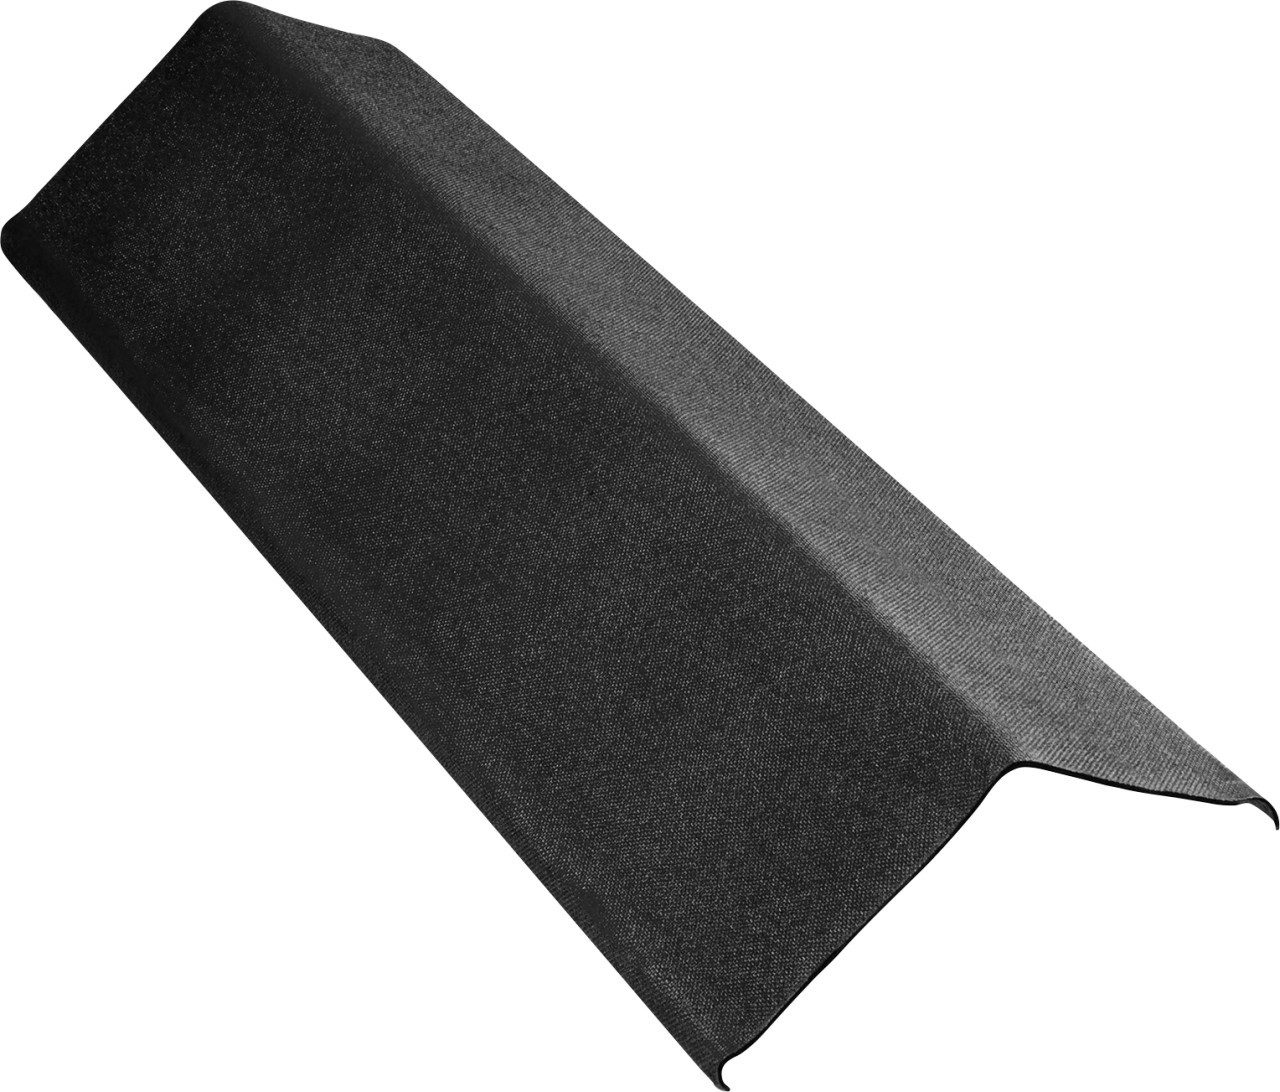 Onduline Dachdurchführung Onduline Ortgang Ondalux 100 x 18 cm schwarz, ABS